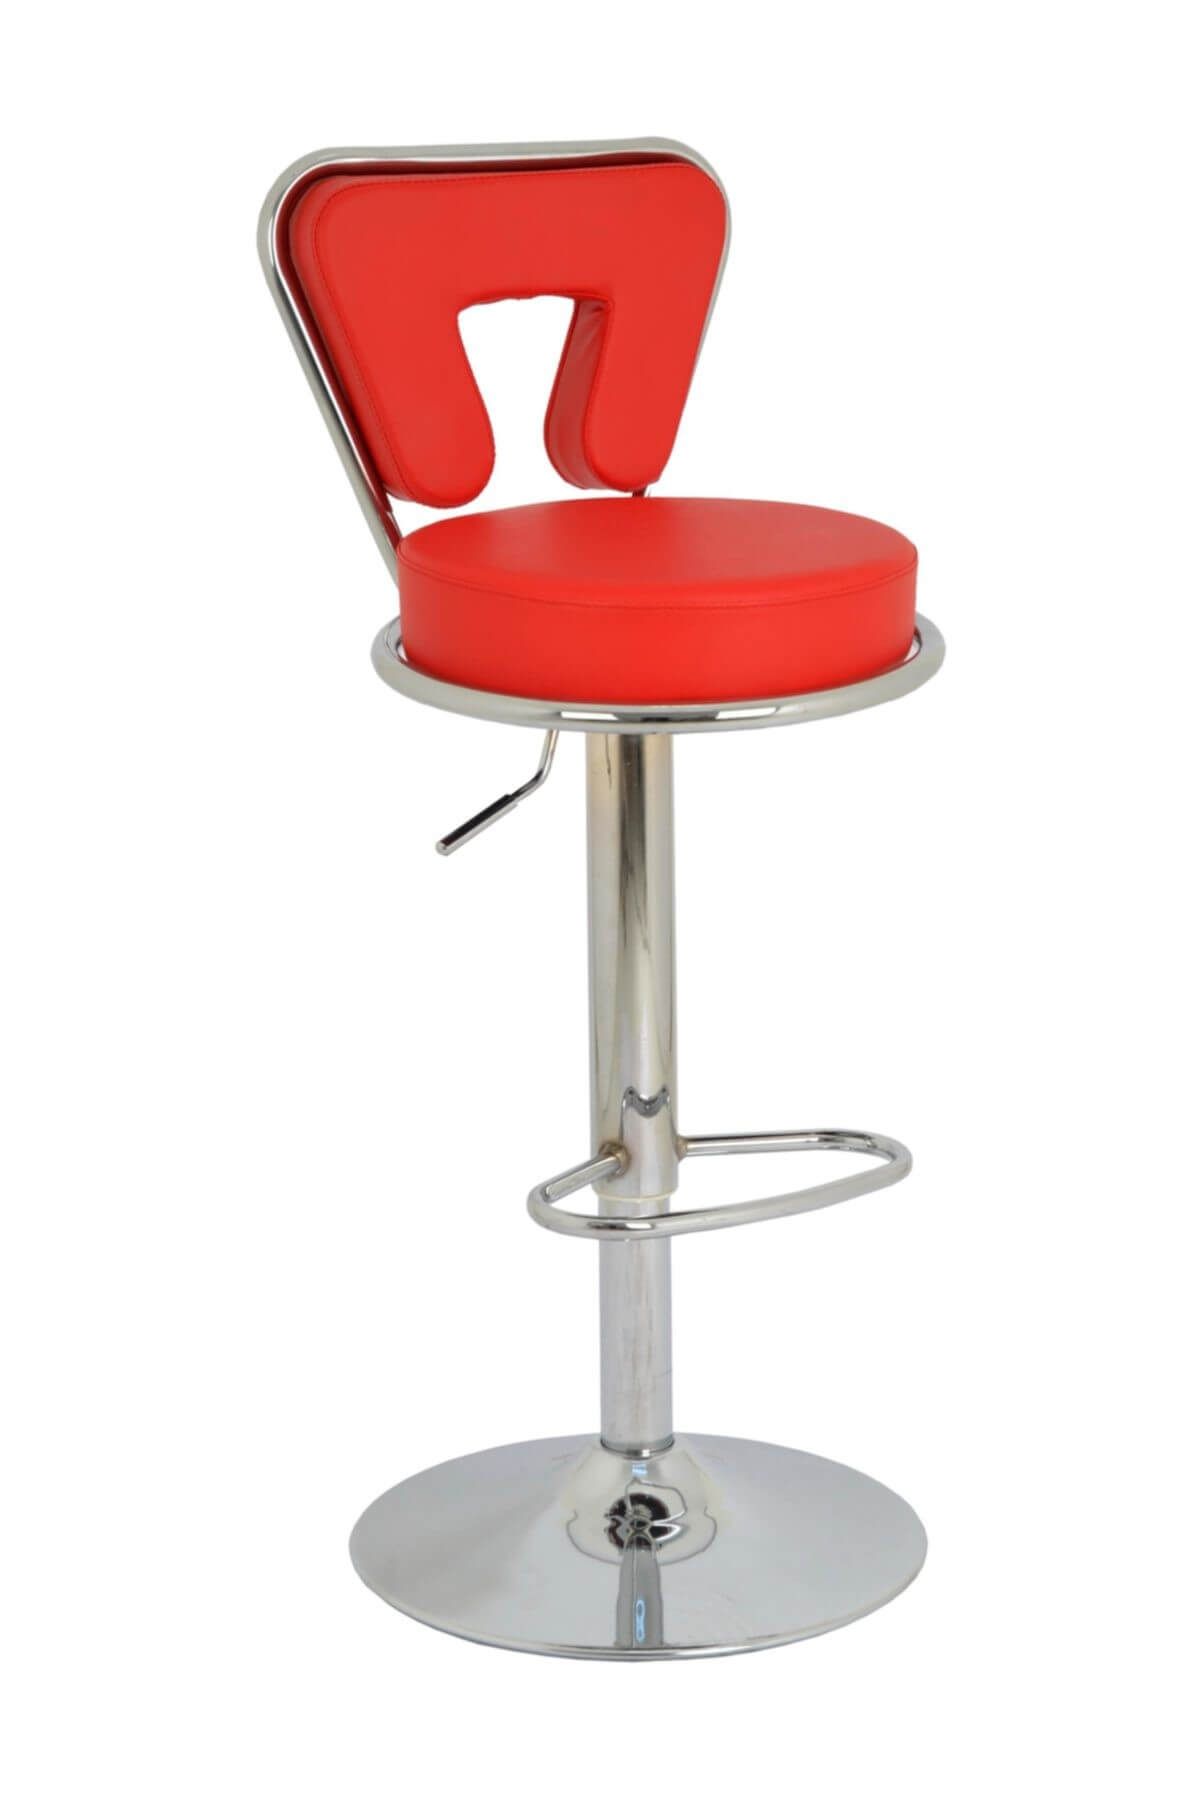 Bürocci Virago Bar Sandalyesi - Kırmızı Deri - 9540s0116